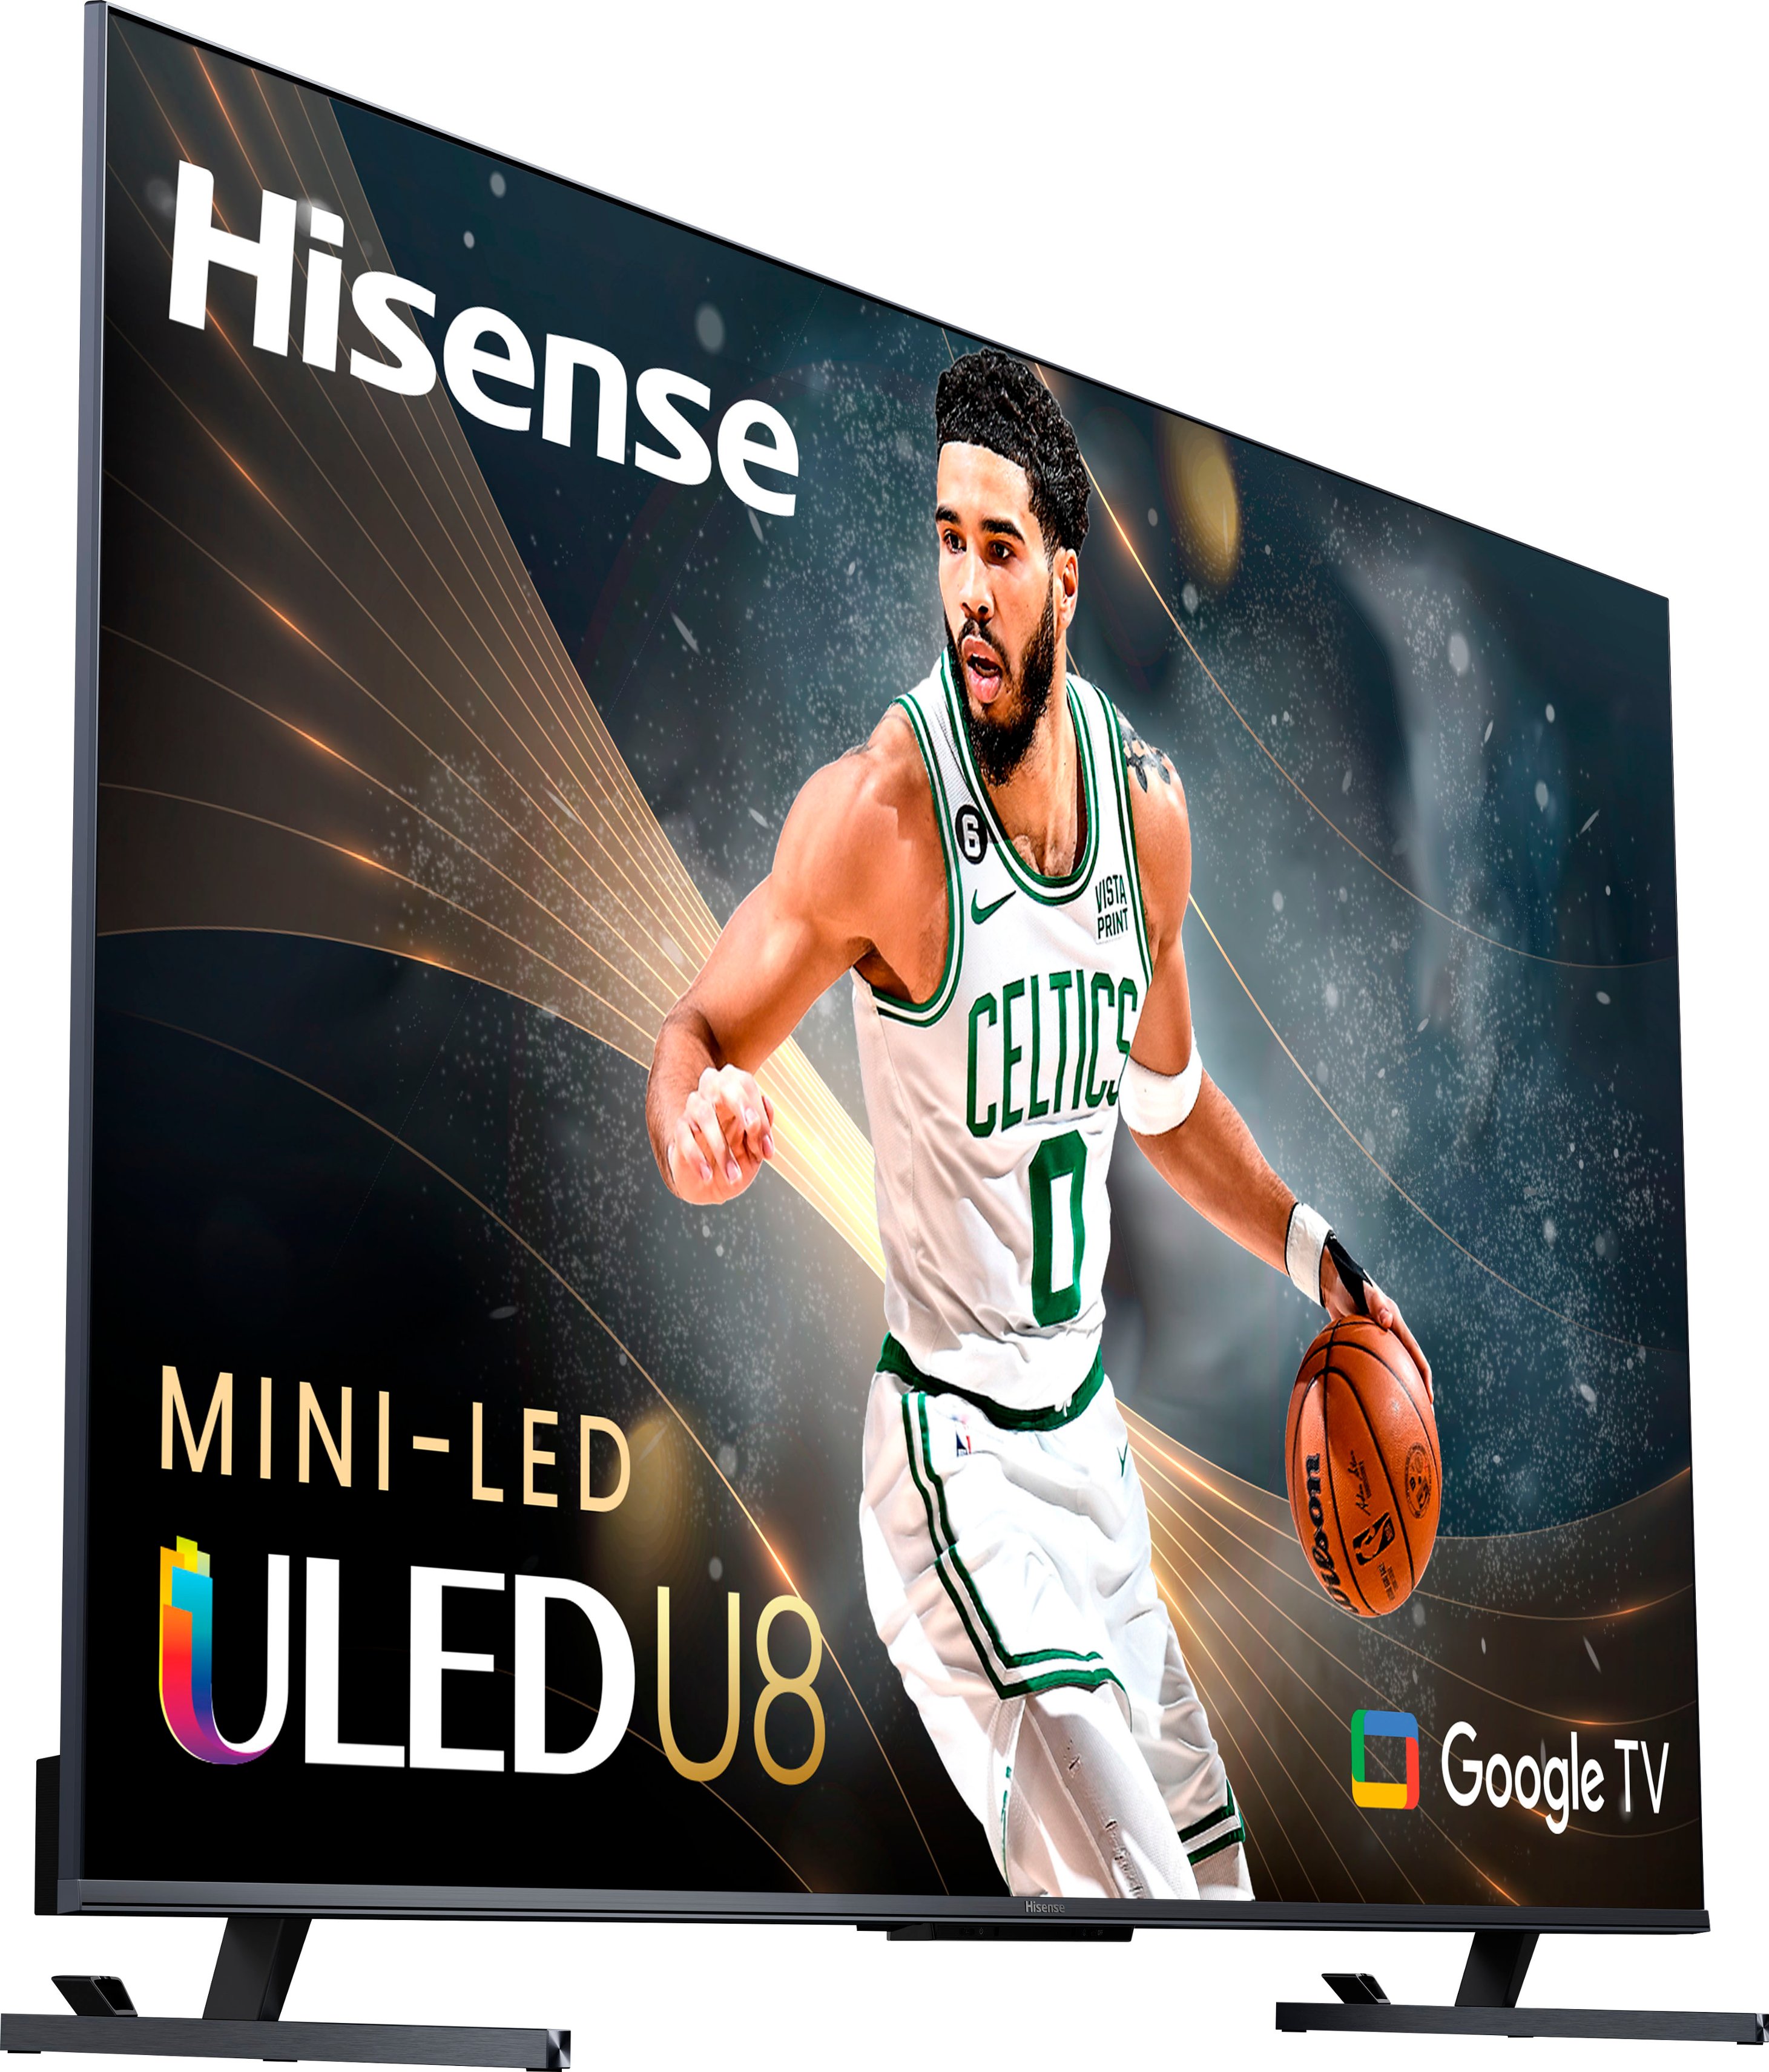 Hisense U8K (65U8K) 4K Mini LED TV Review - The Best Yet? 